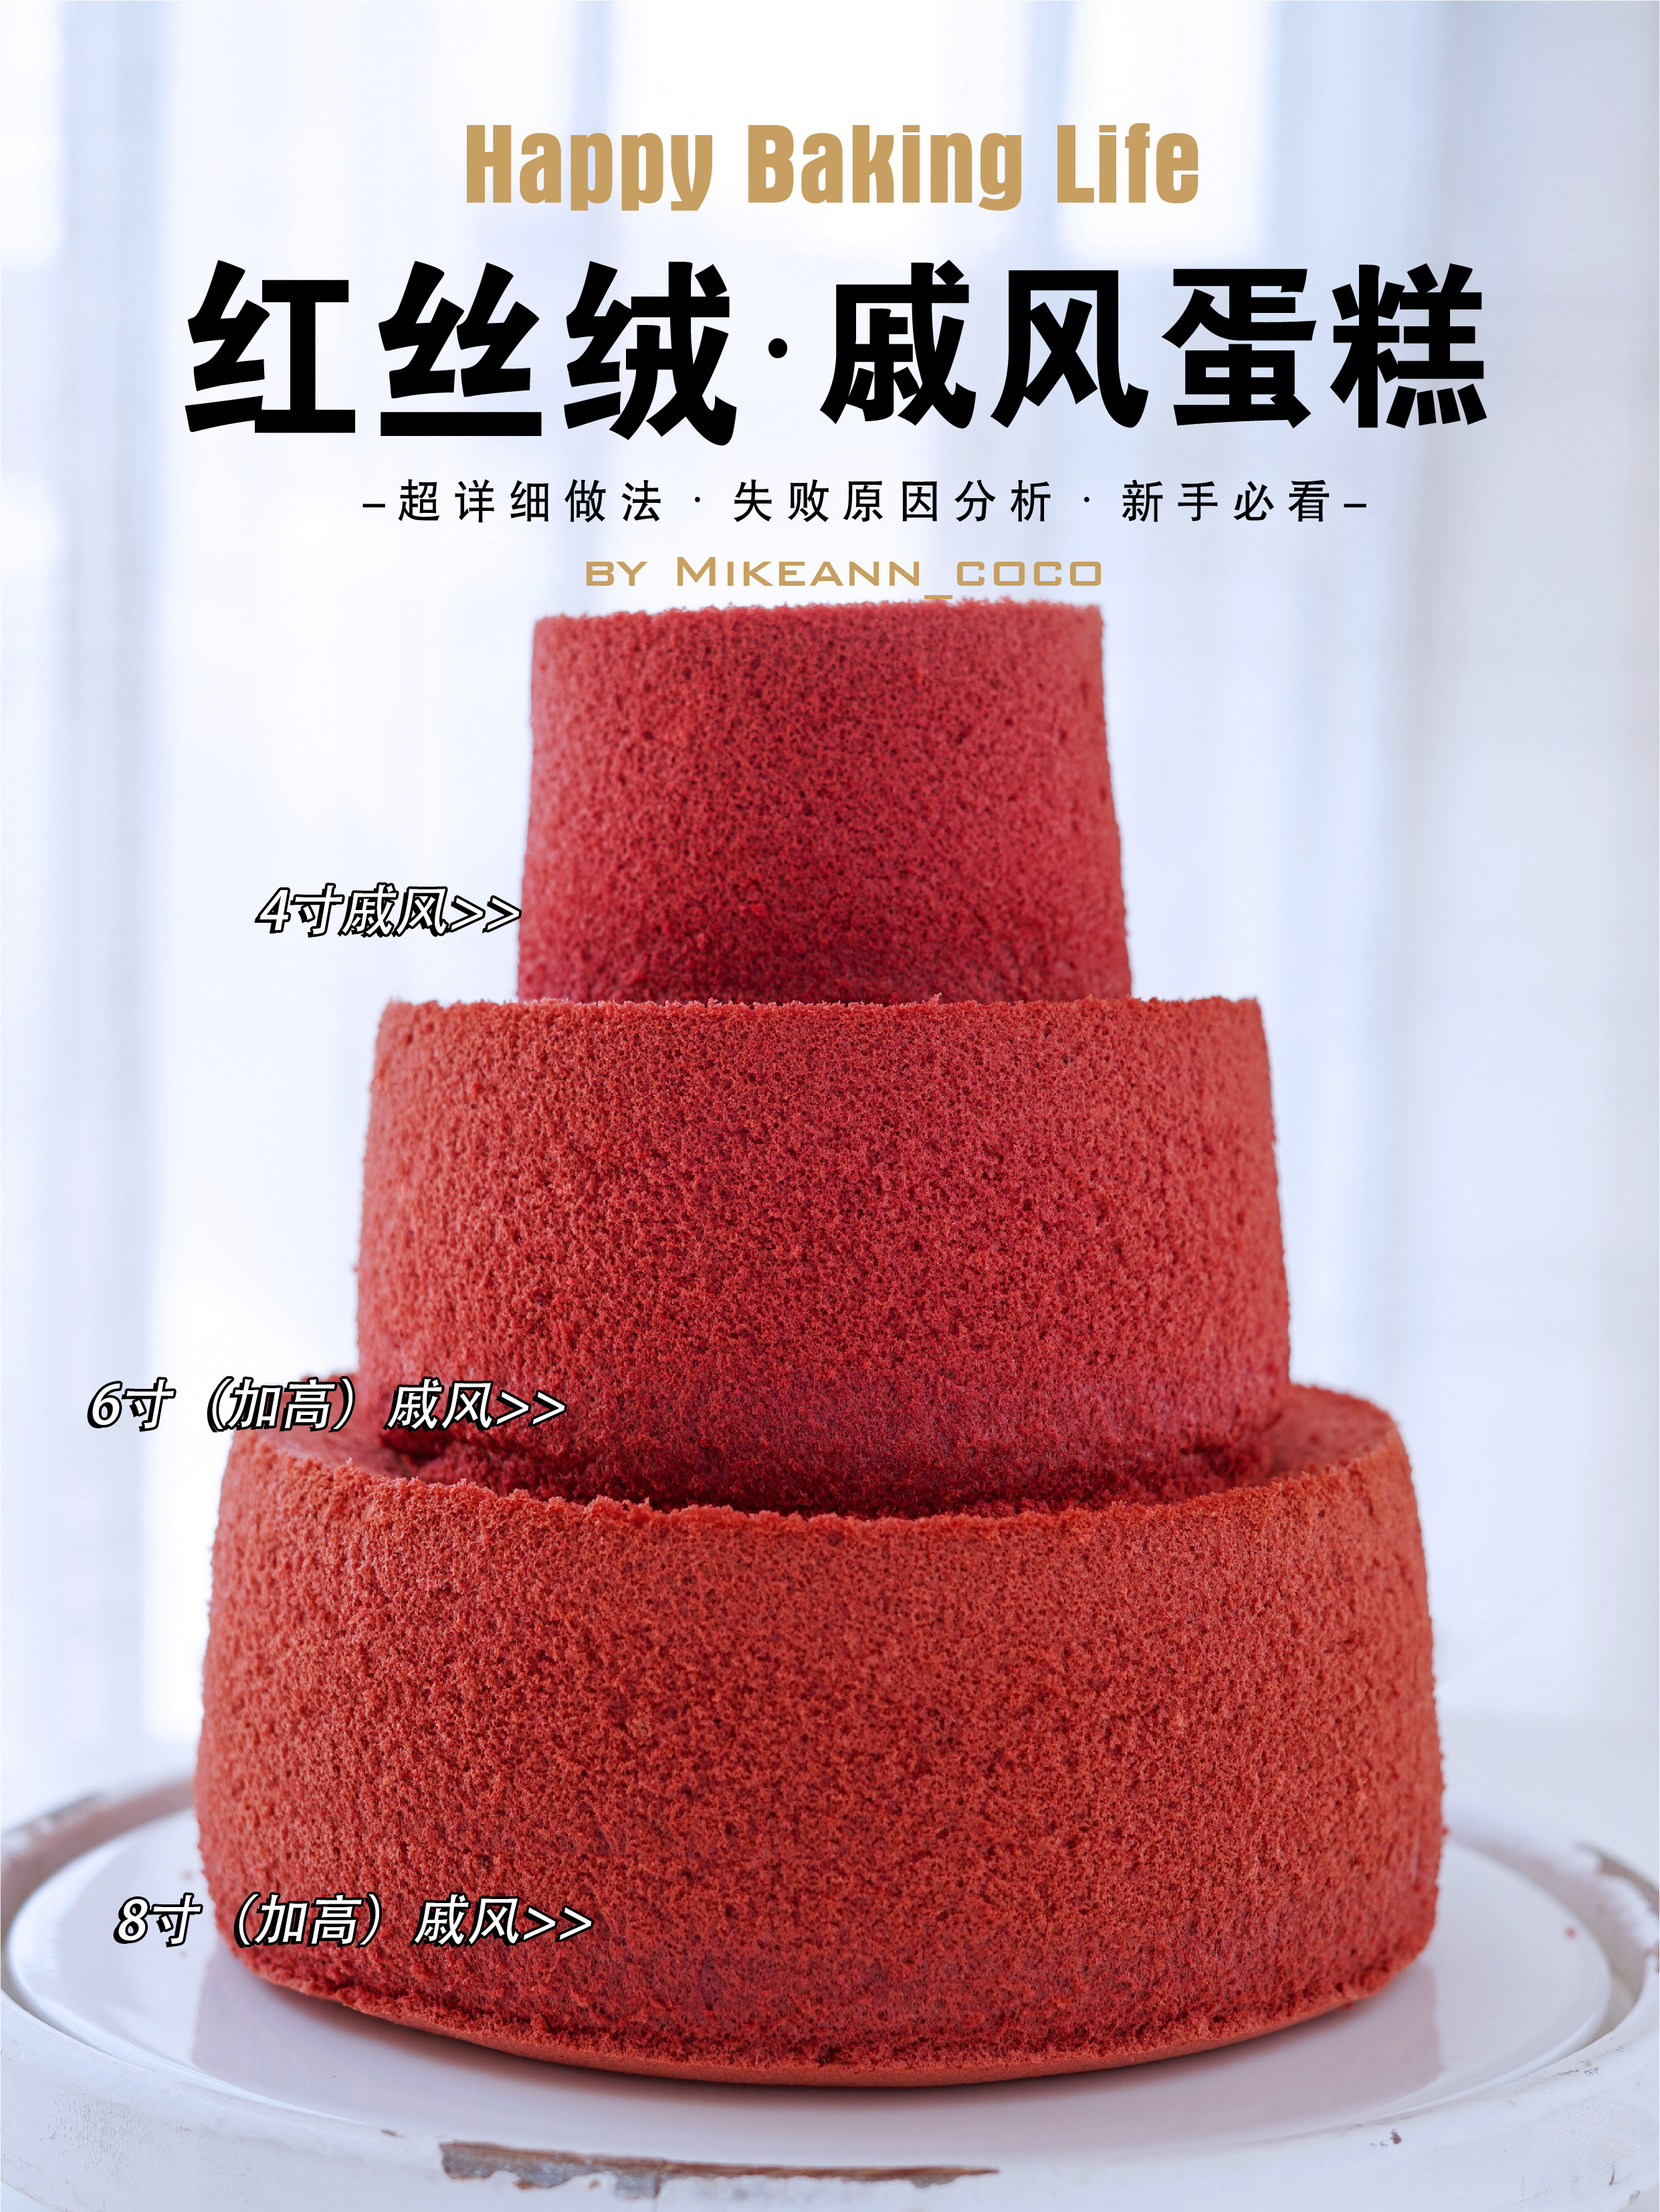 干货‼️4、6、8寸红丝绒戚风蛋糕做法㊙️配方可商用的做法